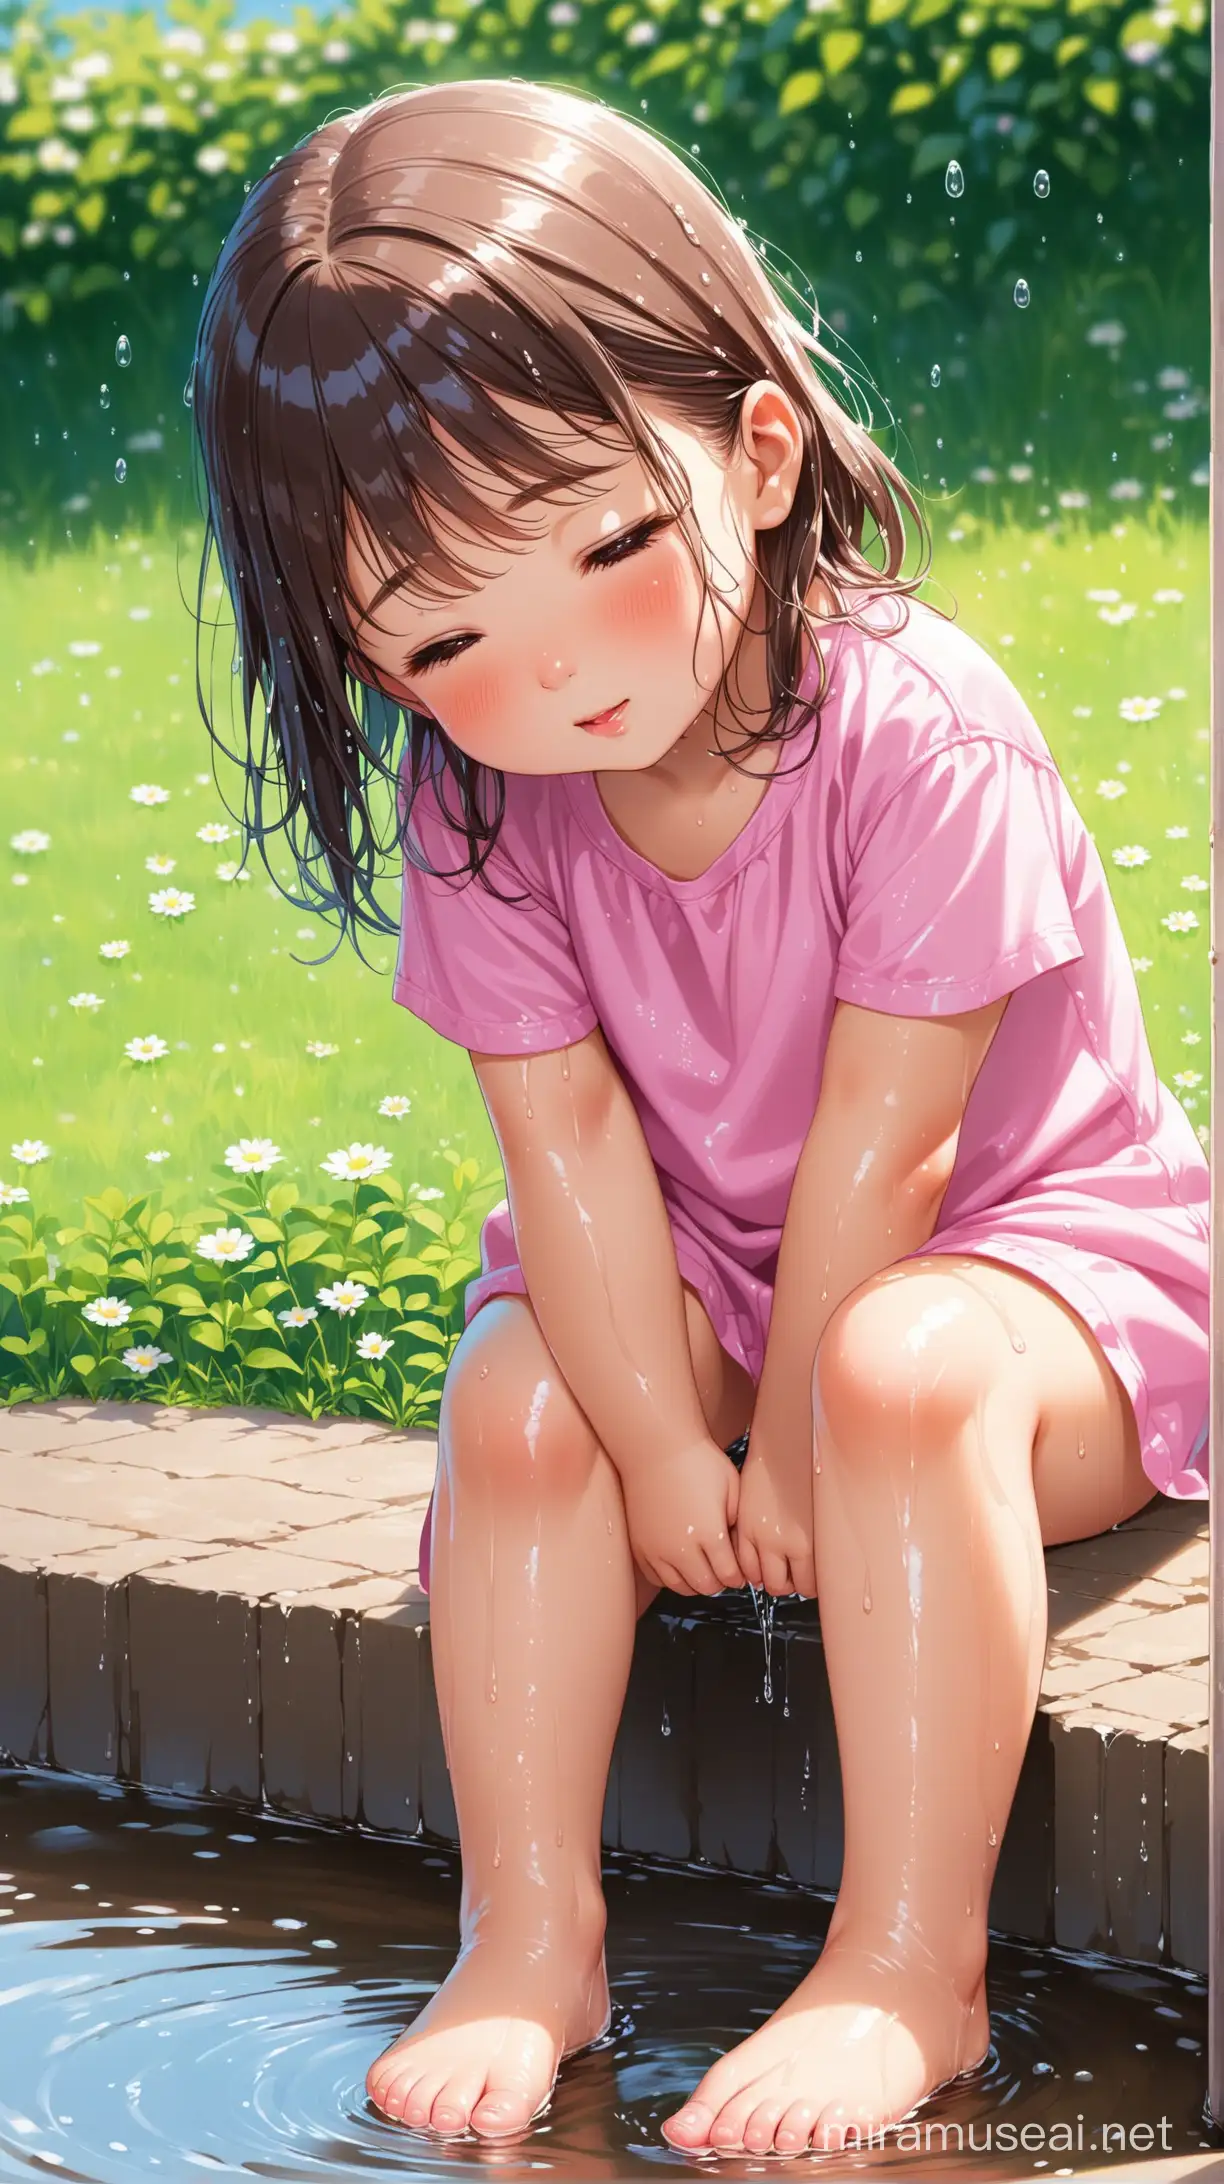 Adorable Little Girl with Wet Feet Playing Joyfully